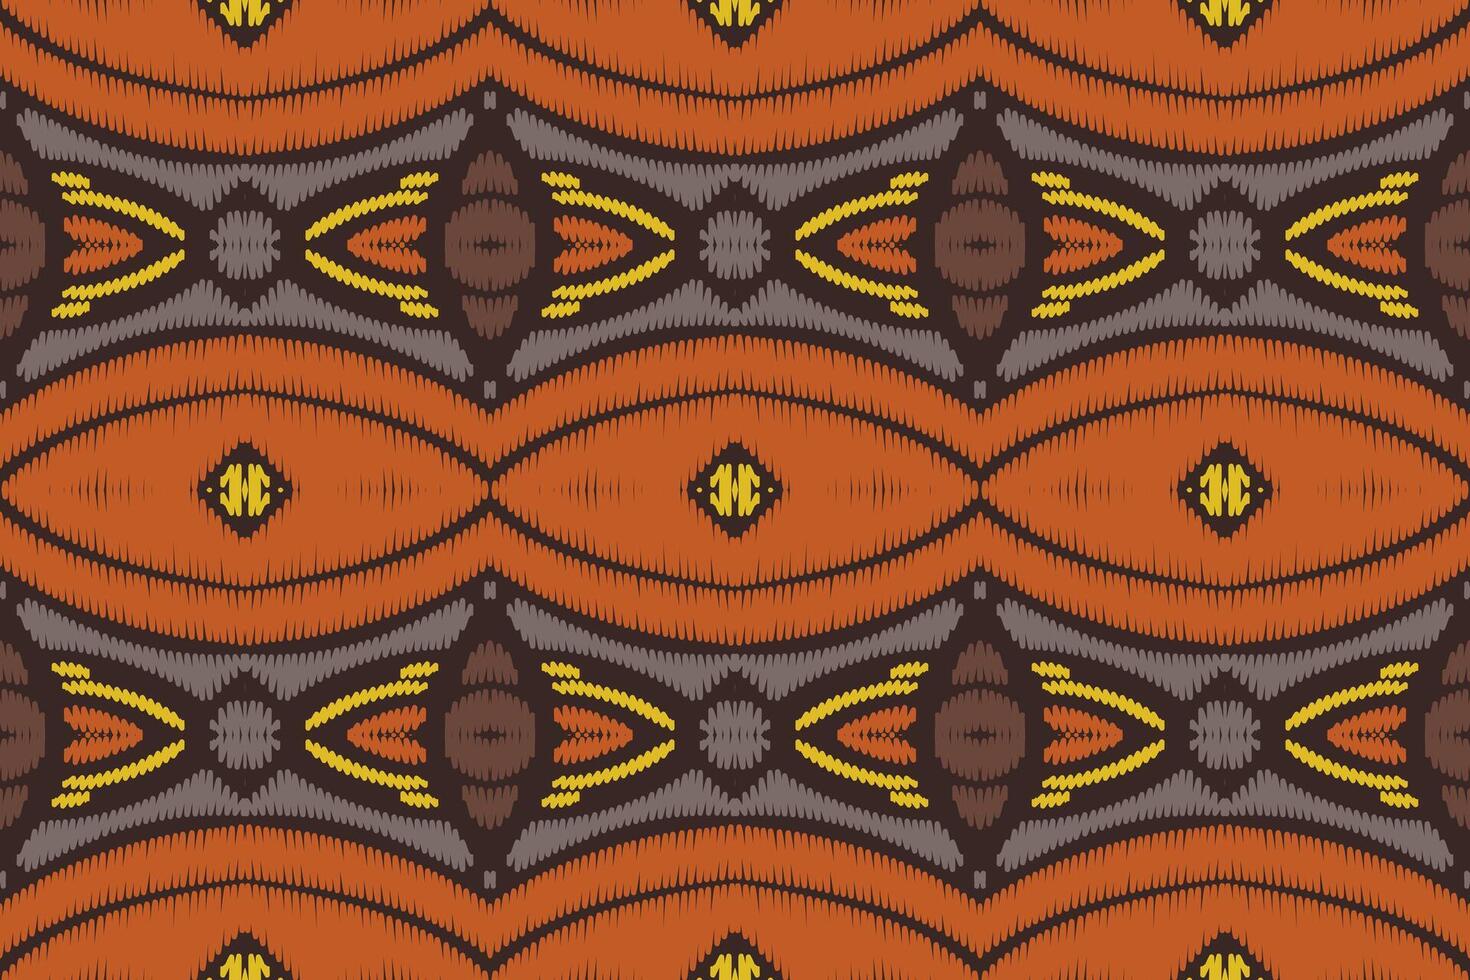 design de padrão étnico de bordado geométrico abstrato ikat. tecido asteca tapete mandala ornamento chevron têxtil decoração papel de parede. fundo de vetor tradicional de peru étnico nativo tribal boho